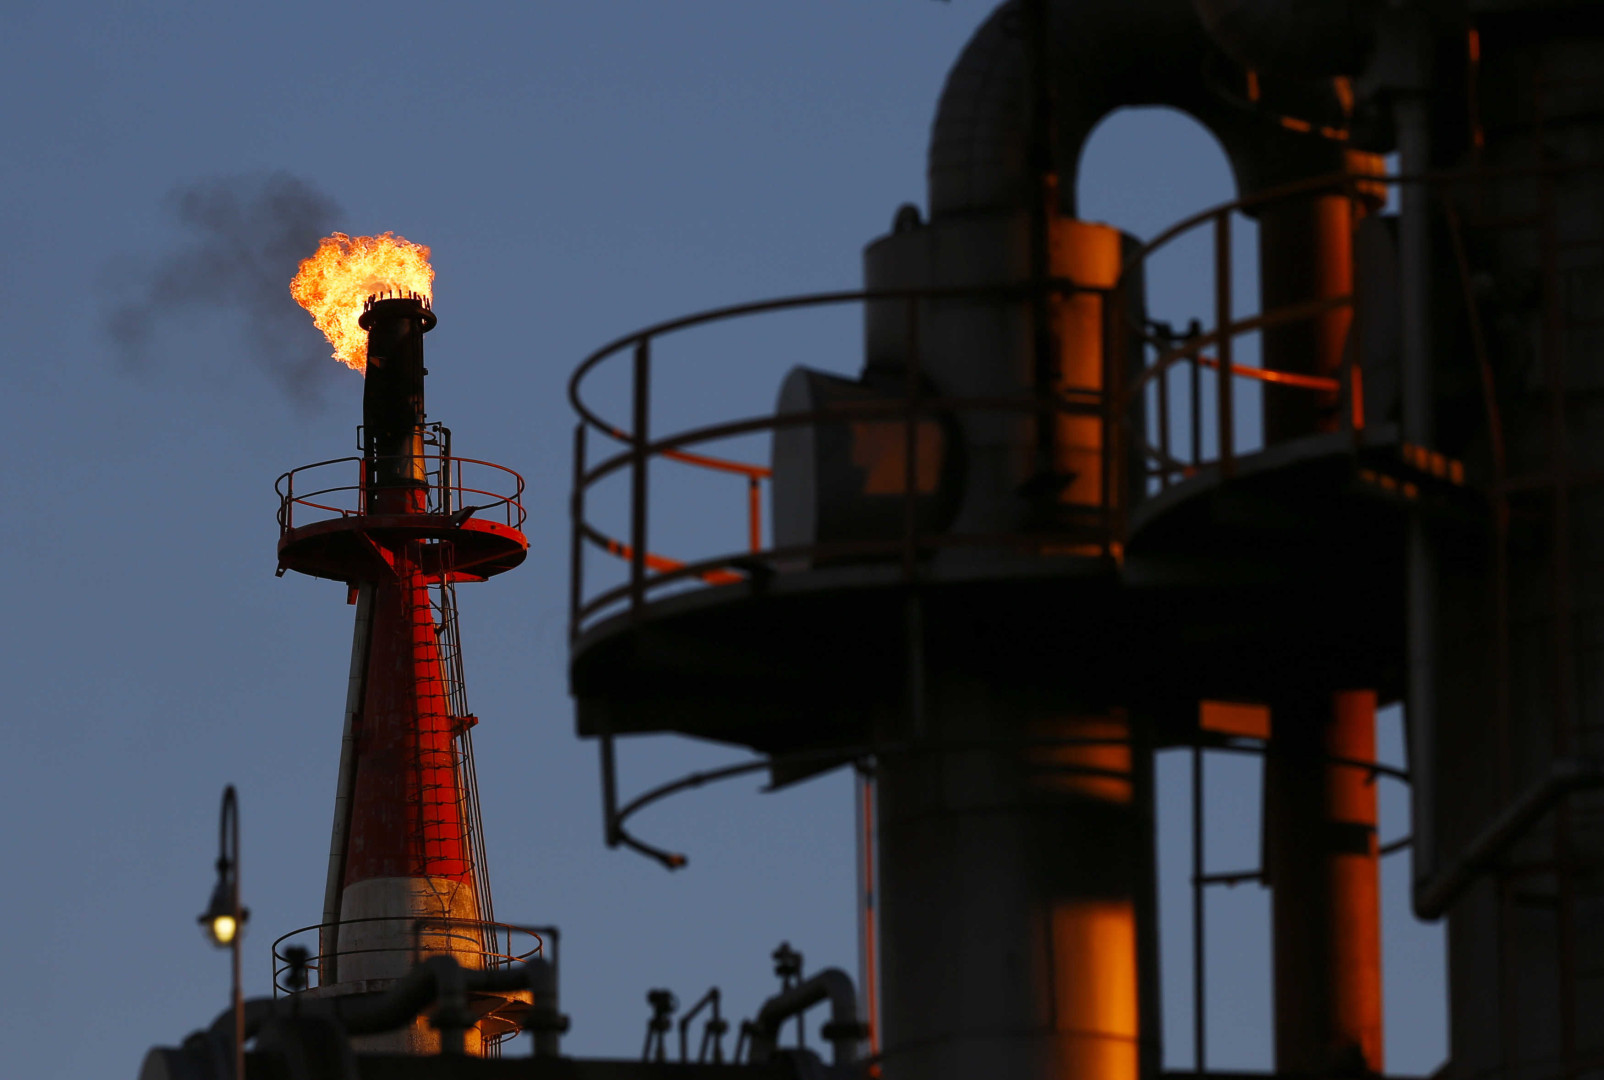 تعطل منشآت التكرير في اميركا يتسبب بتراجع أسعار النفط